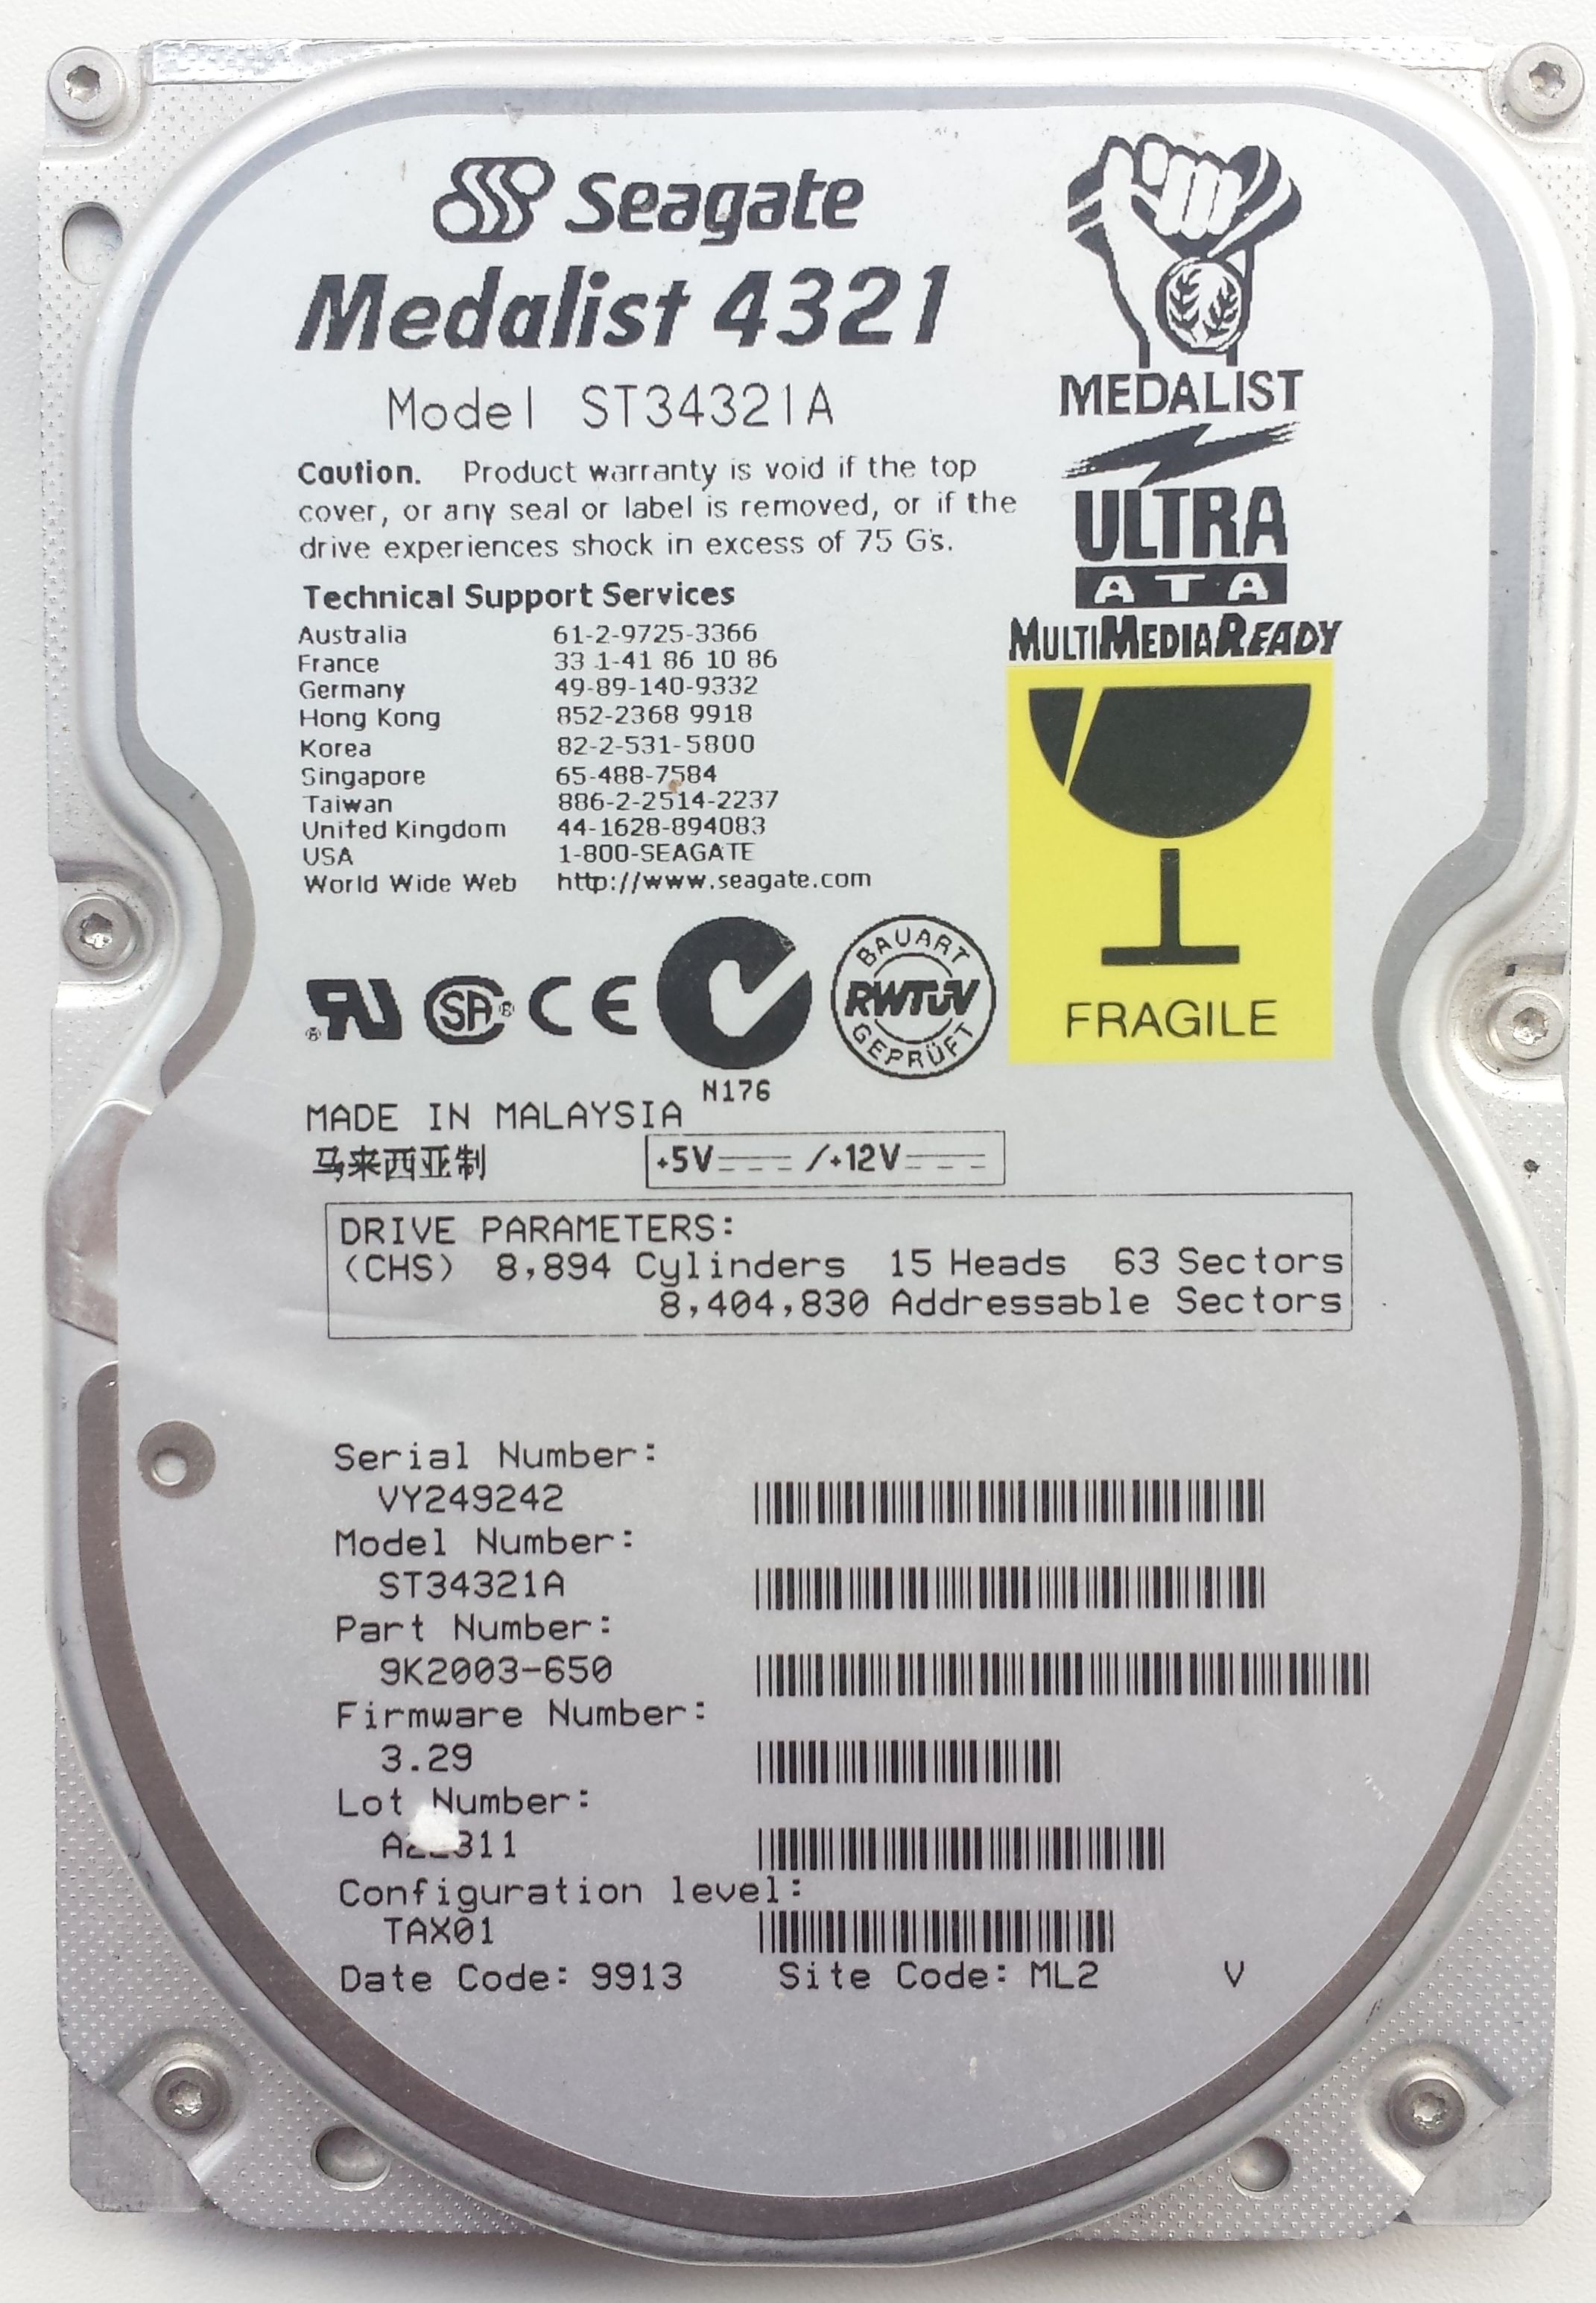 HDD PATA/33 3.5" 4GB / Seagate Medalist 4321 (ST34321A)